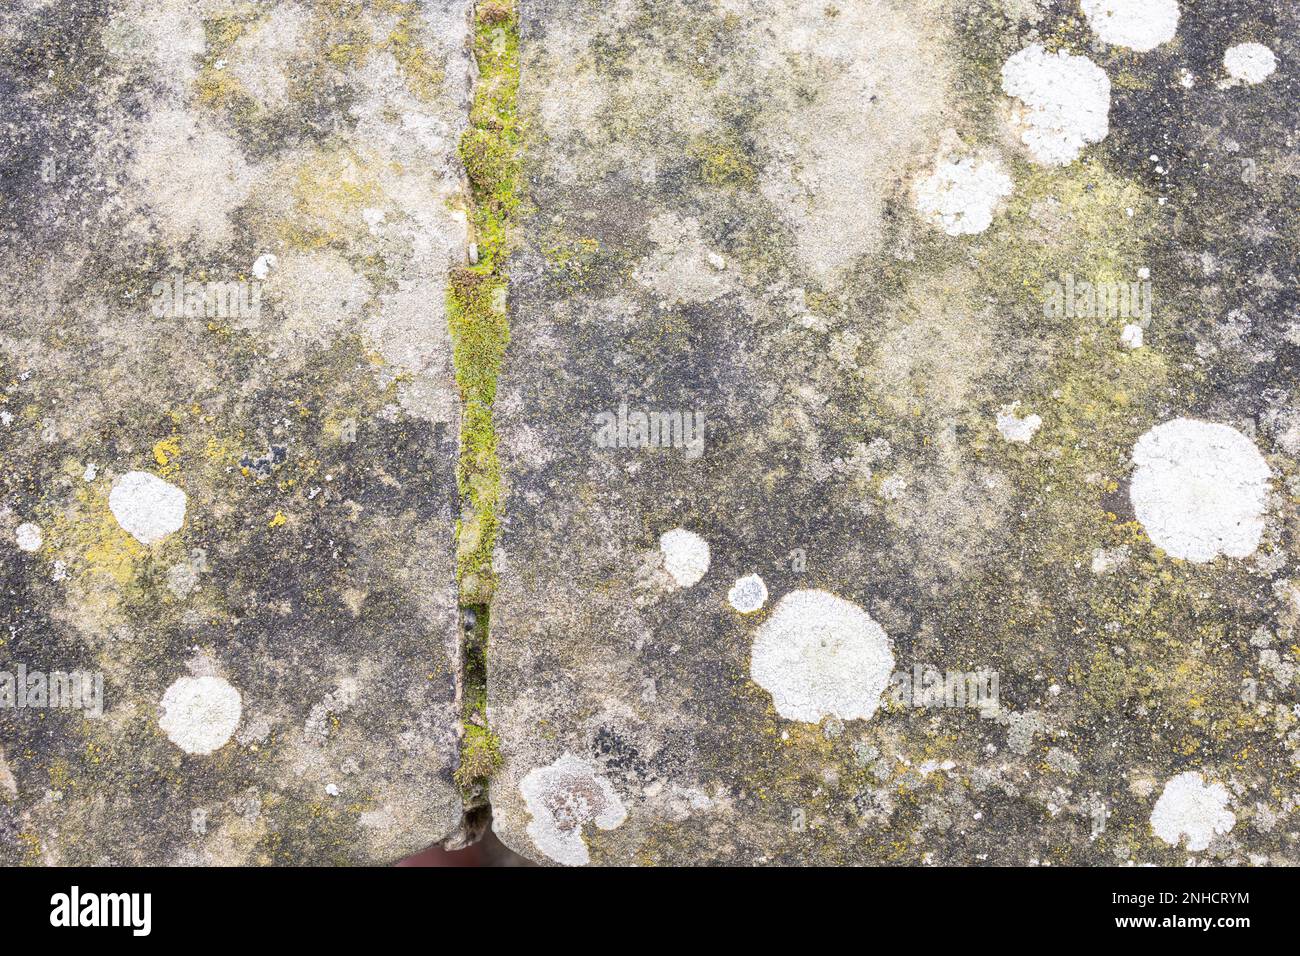 belles pierres de couleur blanche grise, rochers avec mousse, gros plan, nature, texture Banque D'Images